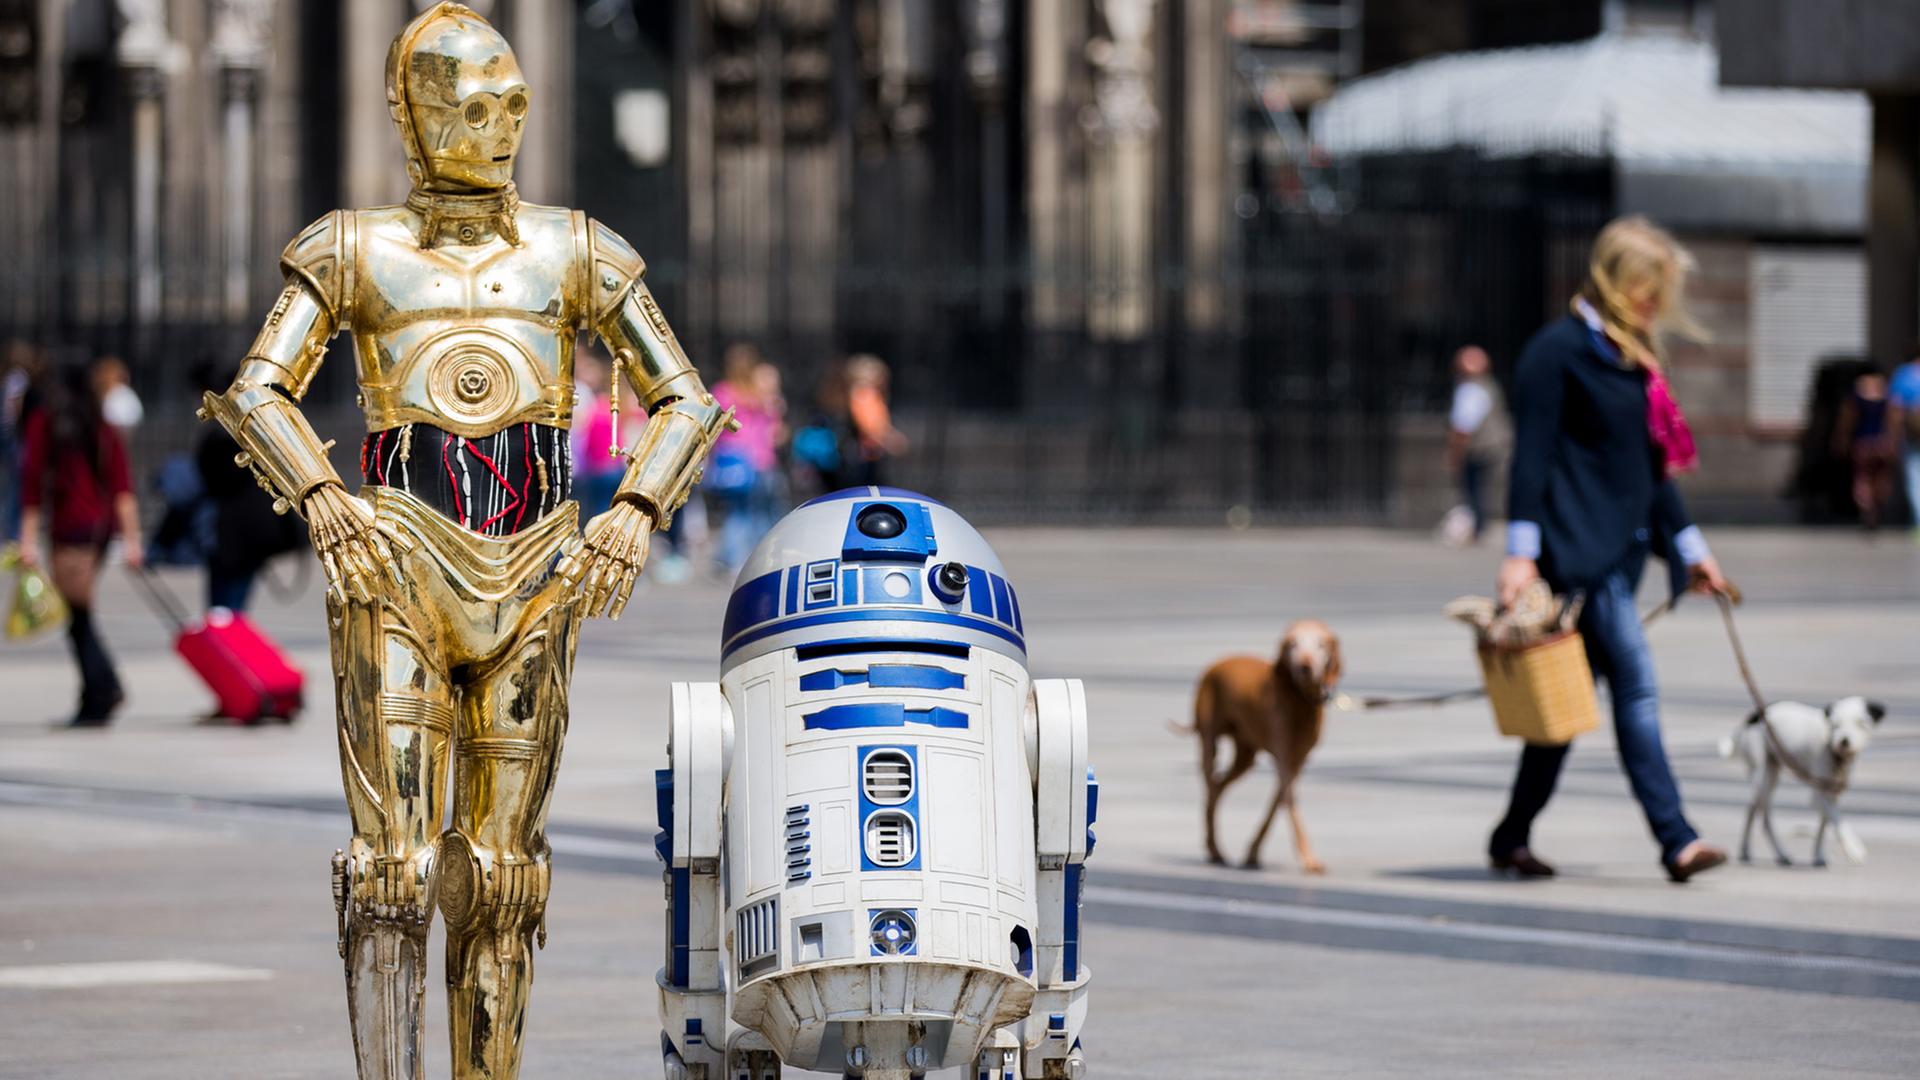 Die Roboter "C-3PO" (l) und R2-D2 aus den Star-Wars-Filmen als Wachsfiguren vor dem Kölner Dom.